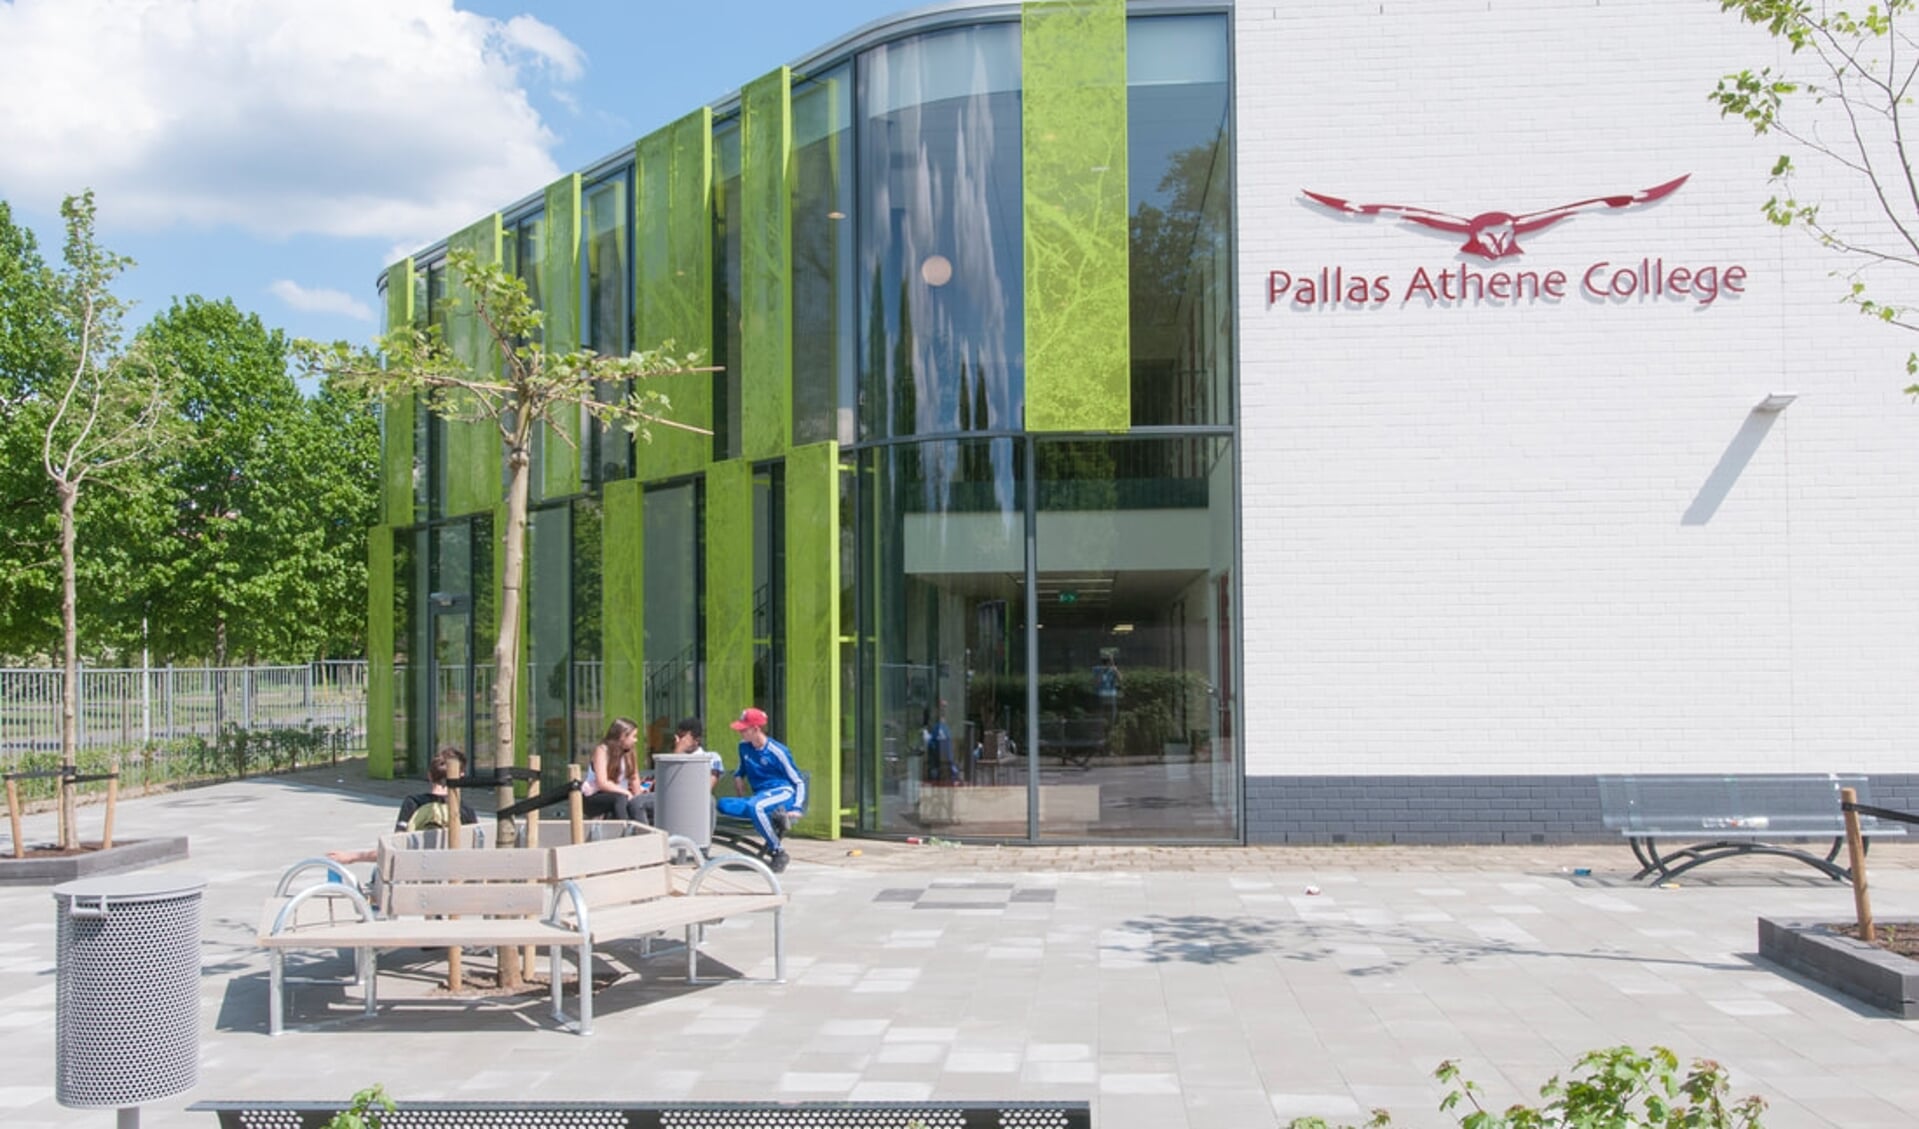 Ook in Ede zijn de middelbare scholen, waaronder het Pallas Athene College, weer volledig open.